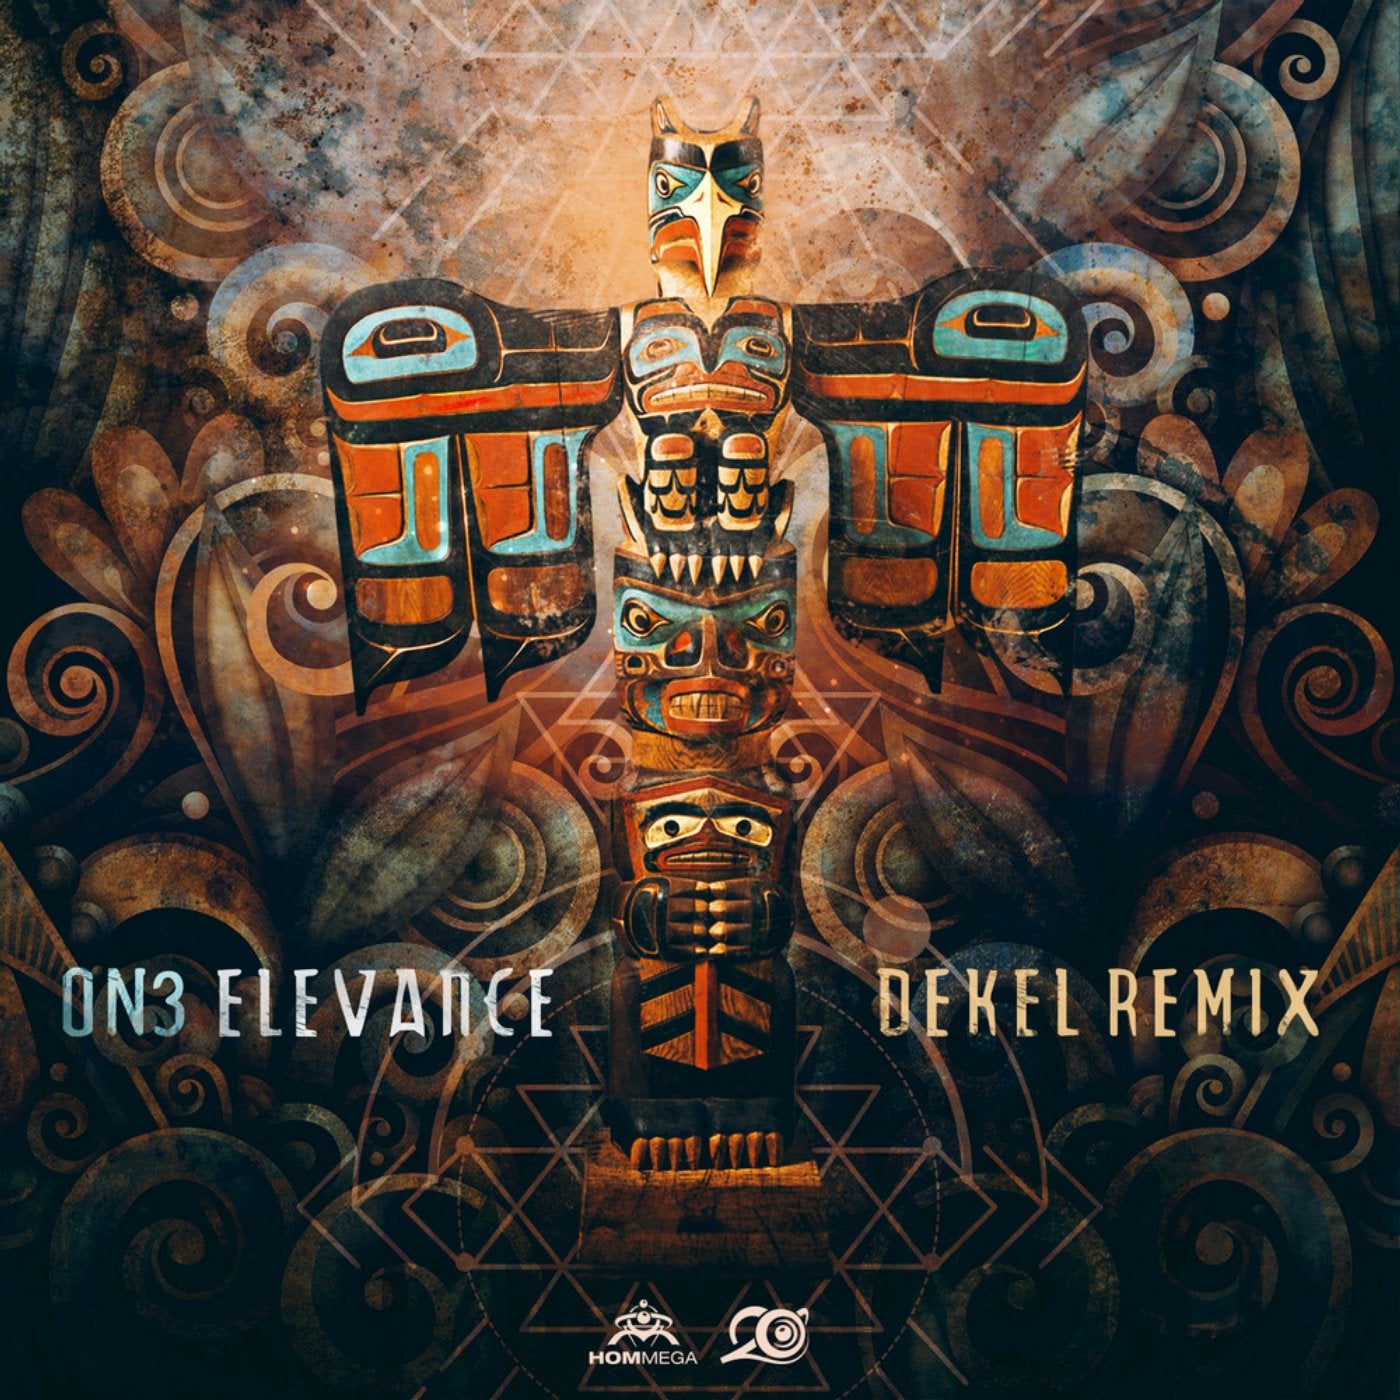 Elevance (Dekel Remix)